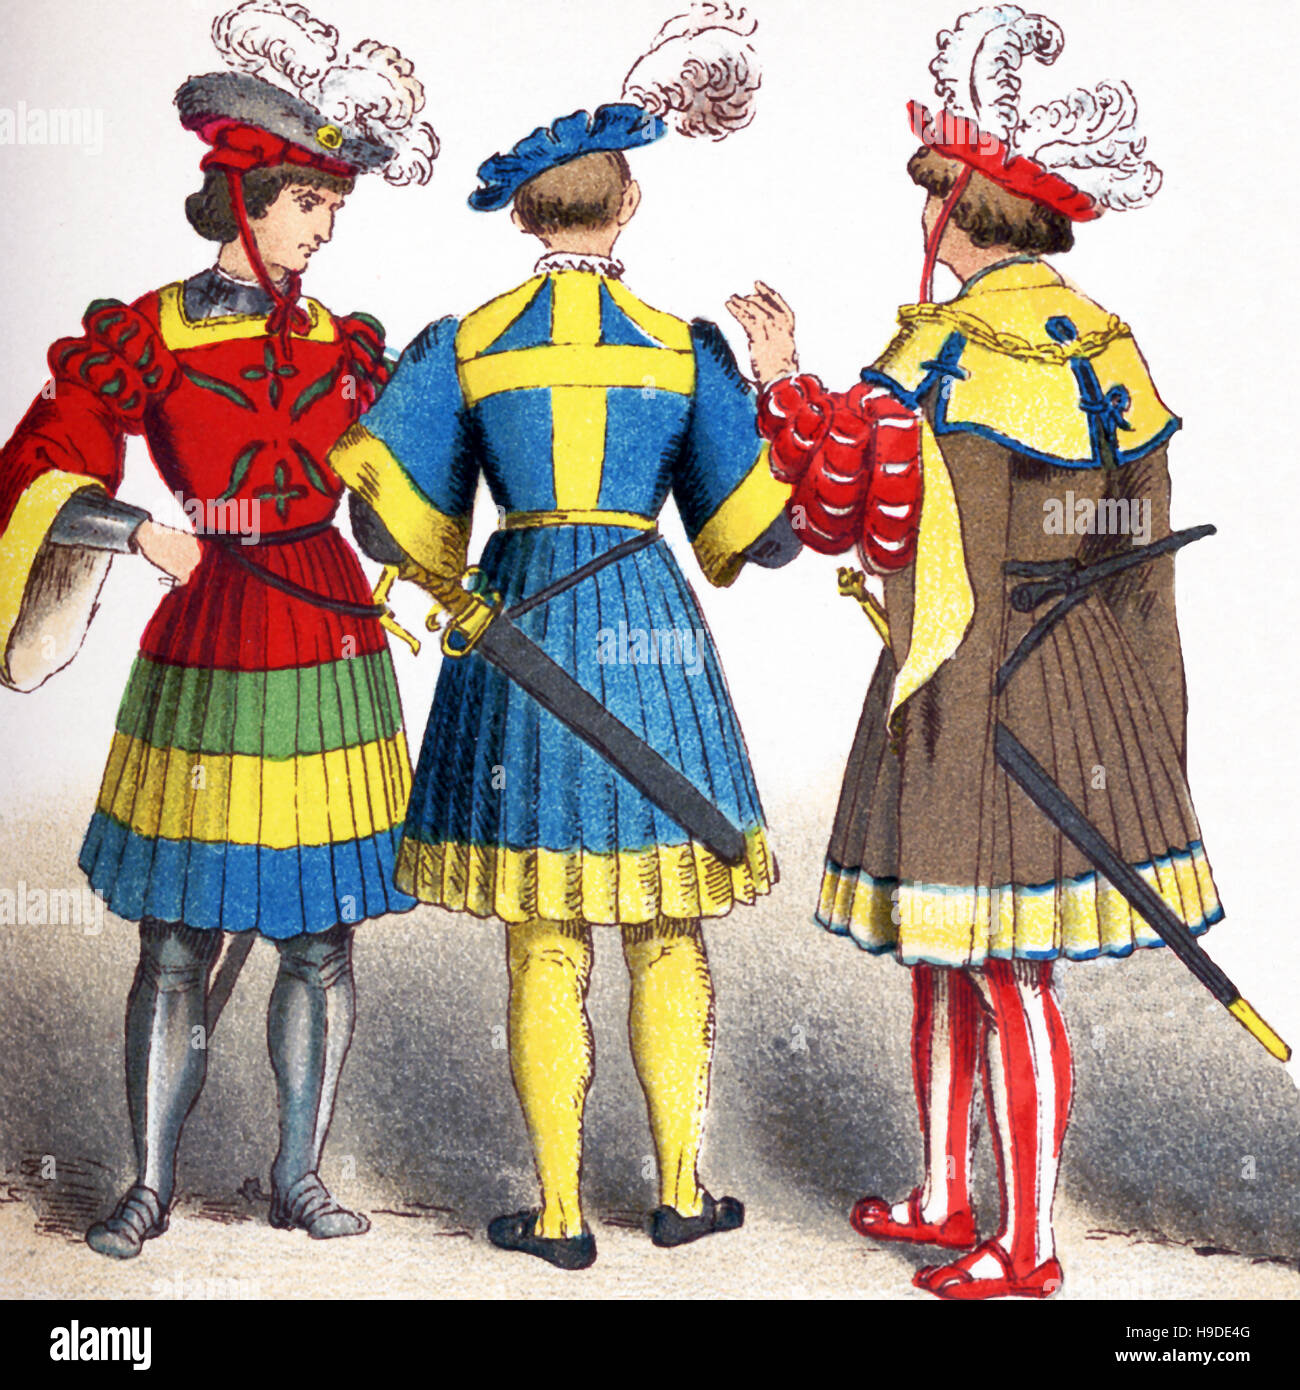 Le figure qui rappresentate sono tedeschi tra 1500 e 1550. Essi sono, da sinistra a destra: due cavalieri e a cittadini di rango in costume di corte,. L'illustrazione risale al 1882. Foto Stock